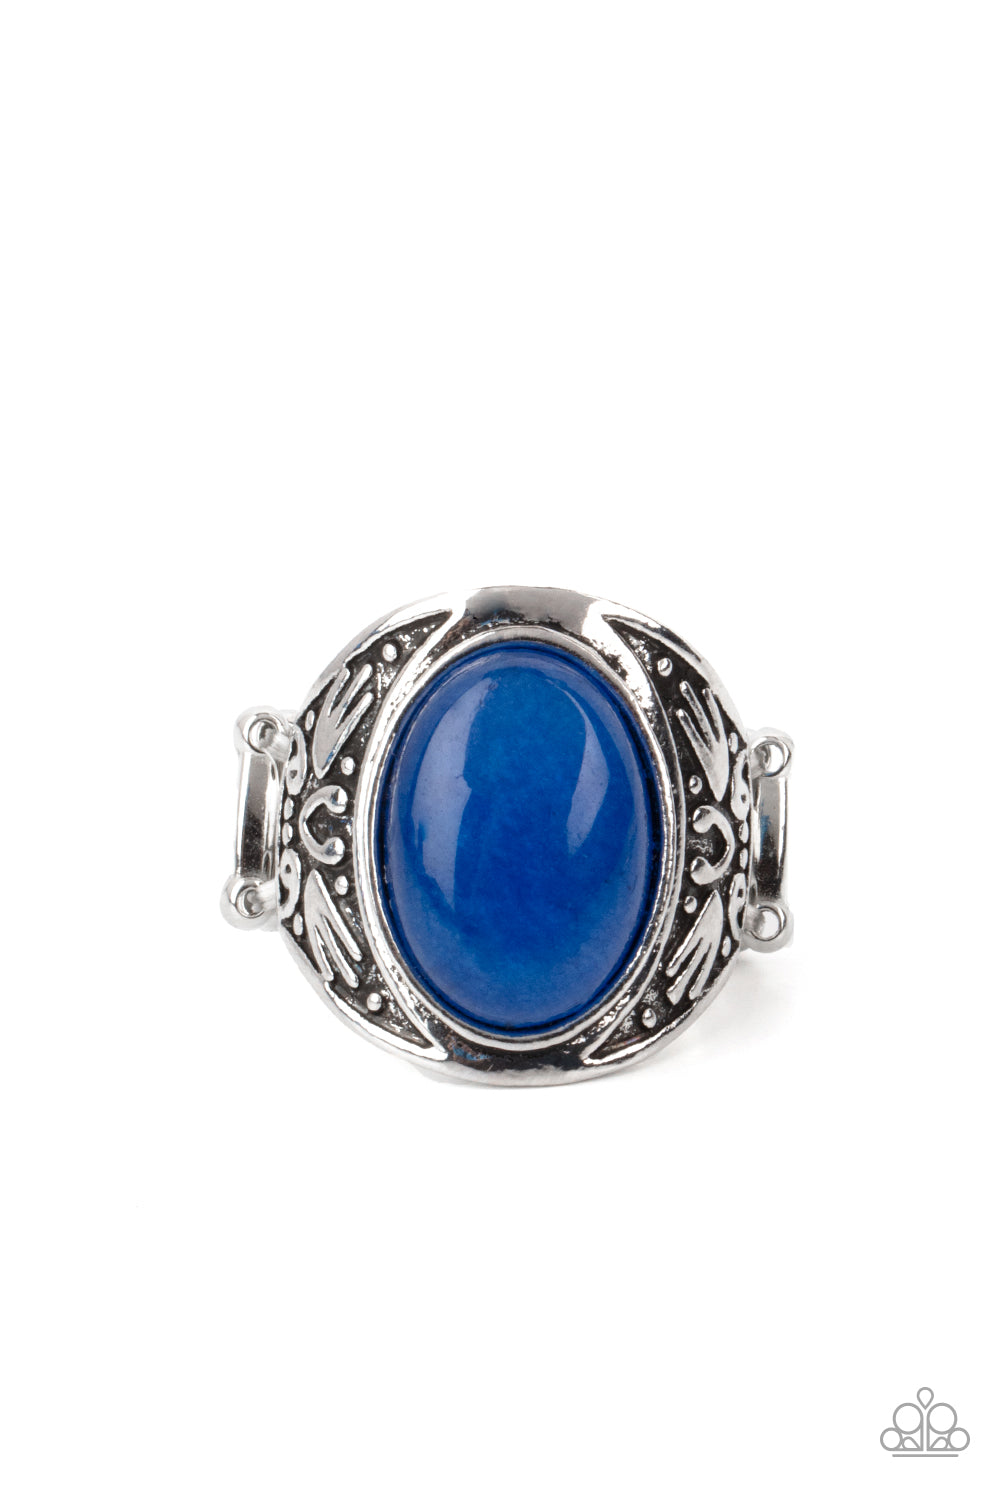 Sedona Dream - blue - Paparazzi ring